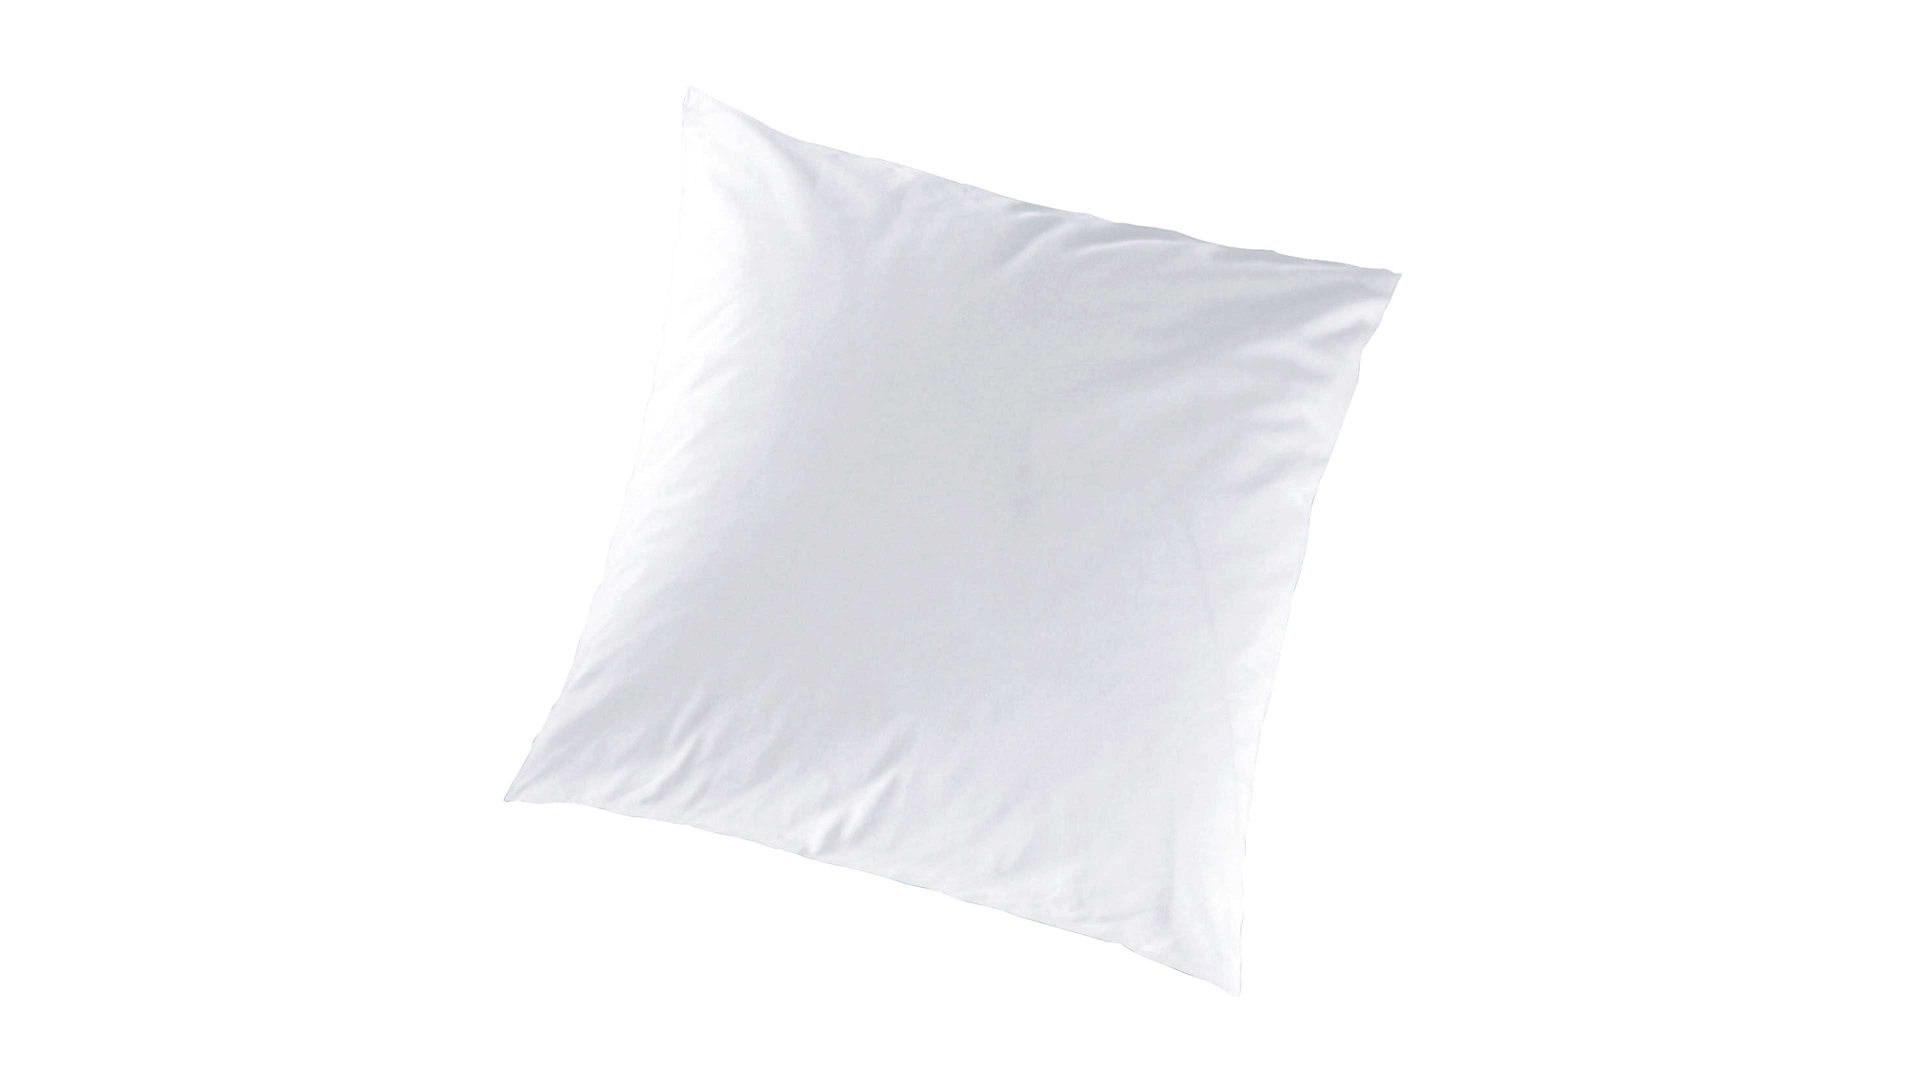 Kissenbezug /-hülle H.g. hahn haustextilien aus Stoff in Weiß HAHN Luxus-Satin-Kopfkissenbezug Sempre weißer Baumwollsatin - ca. 80 x 80 cm